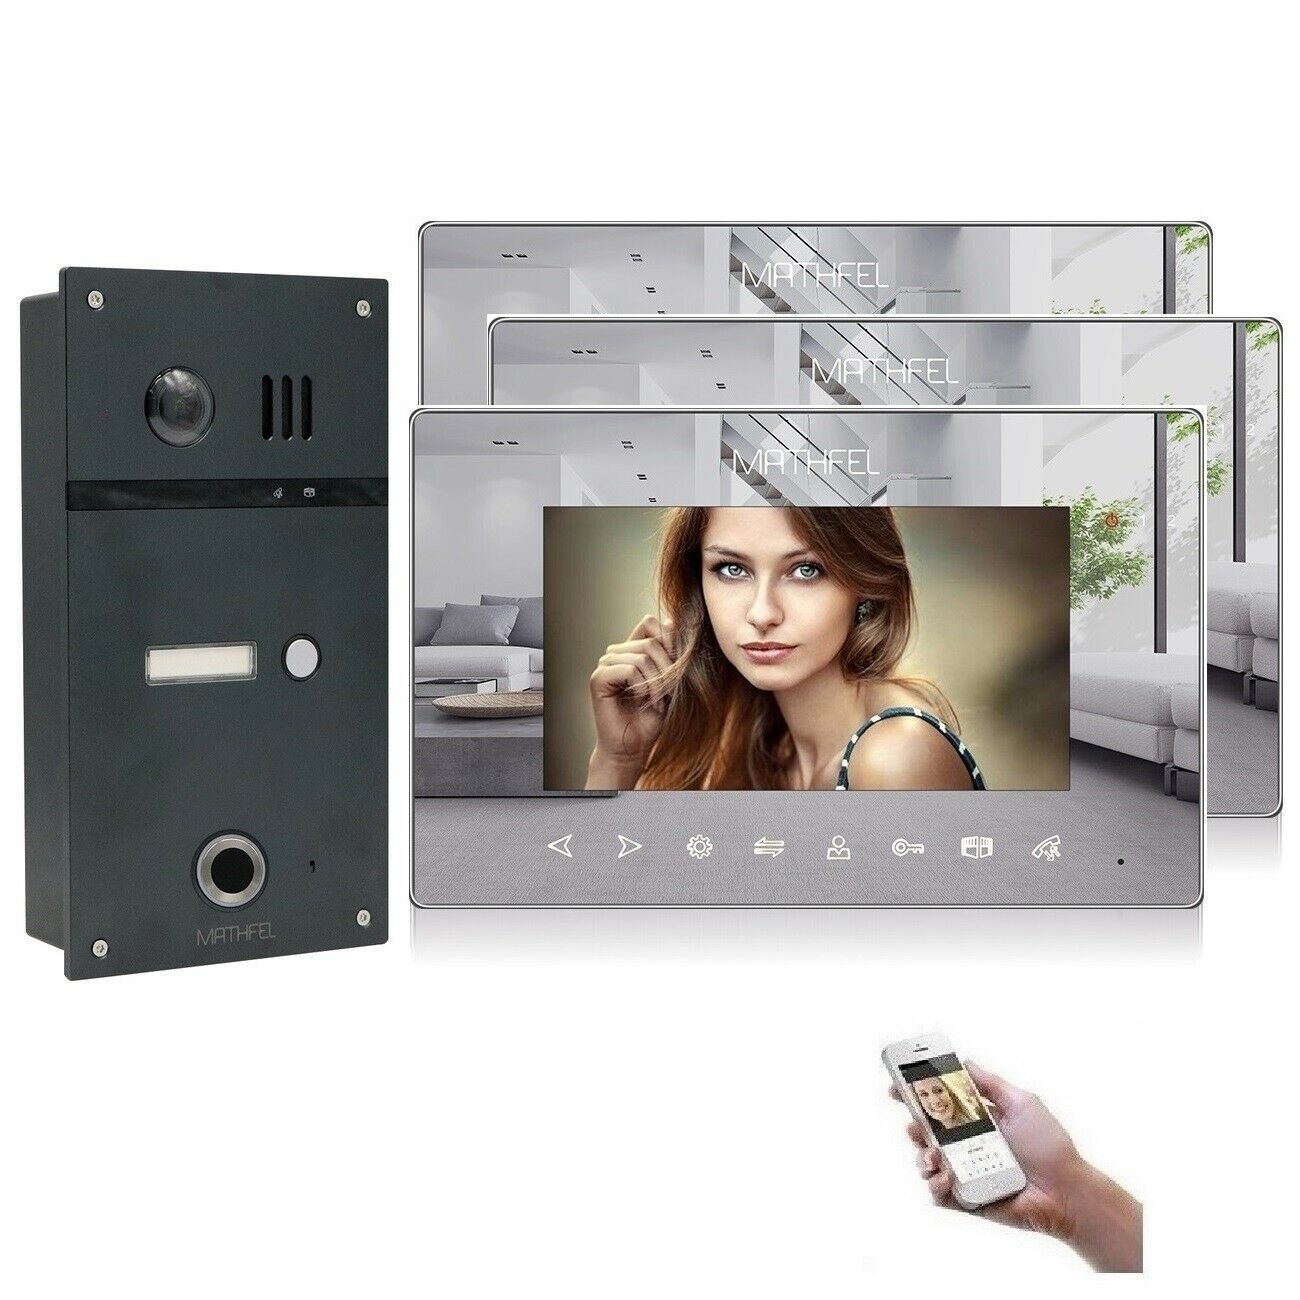 8 Familenhaus Video Türsprechanlage 7" Monitor mit Touchscreen 170° Fischauge